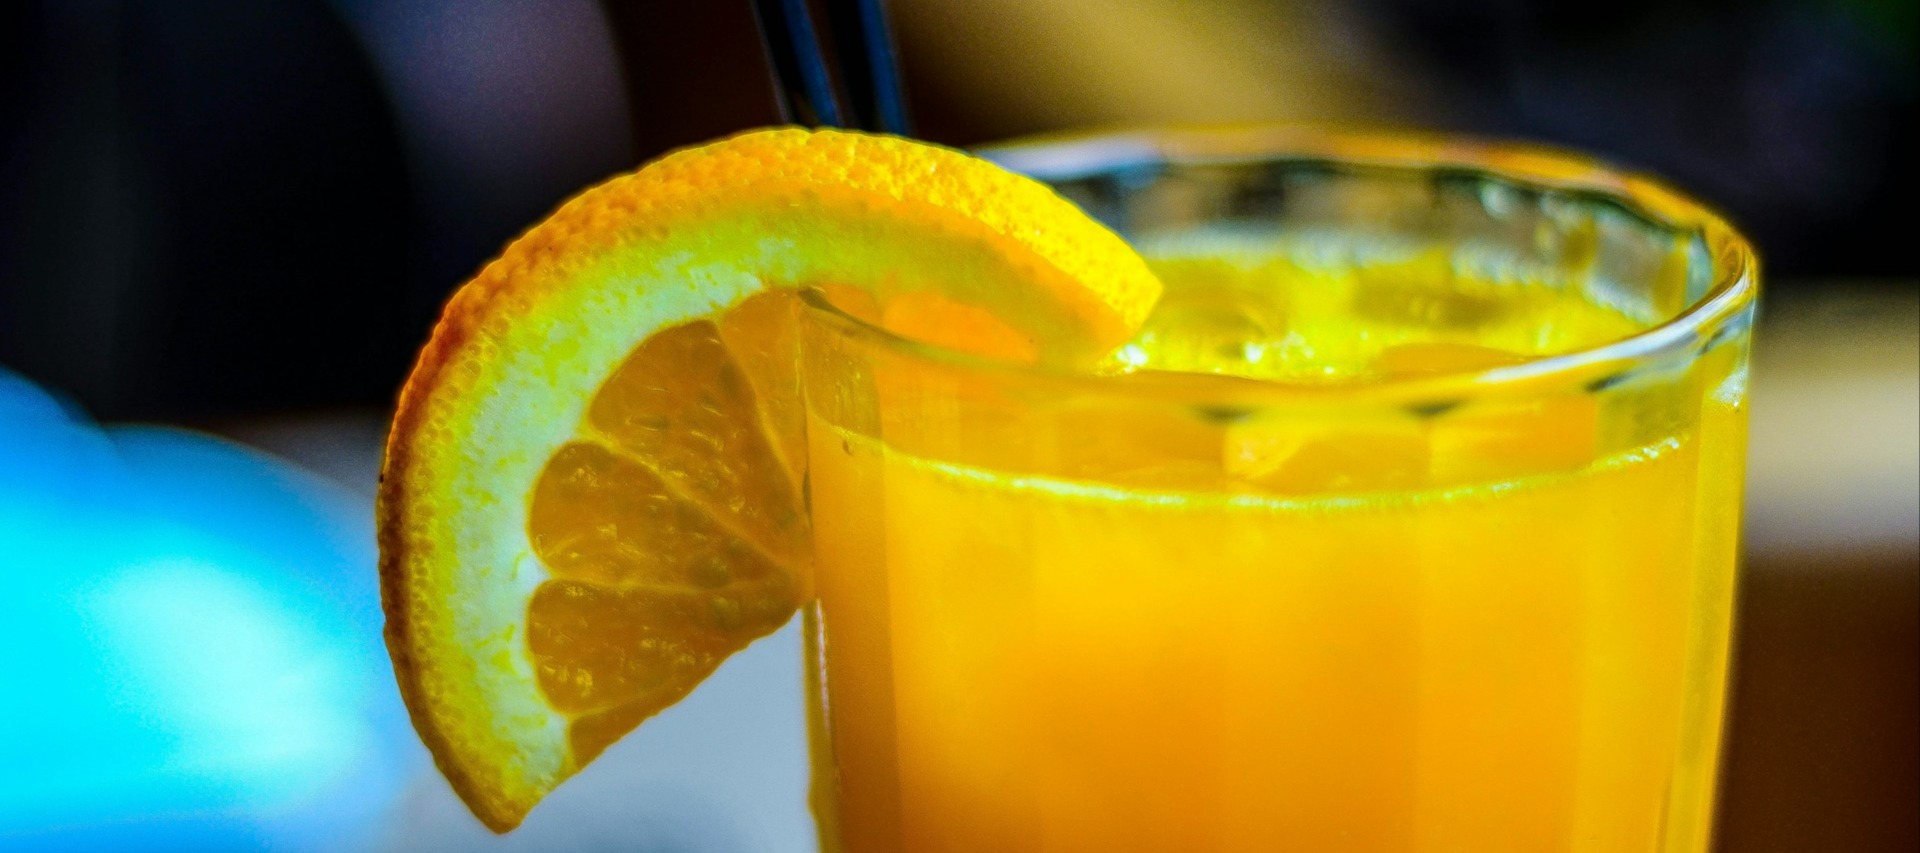 Фото новости: "Производители могут начать использовать мандарины в апельсиновом соке"